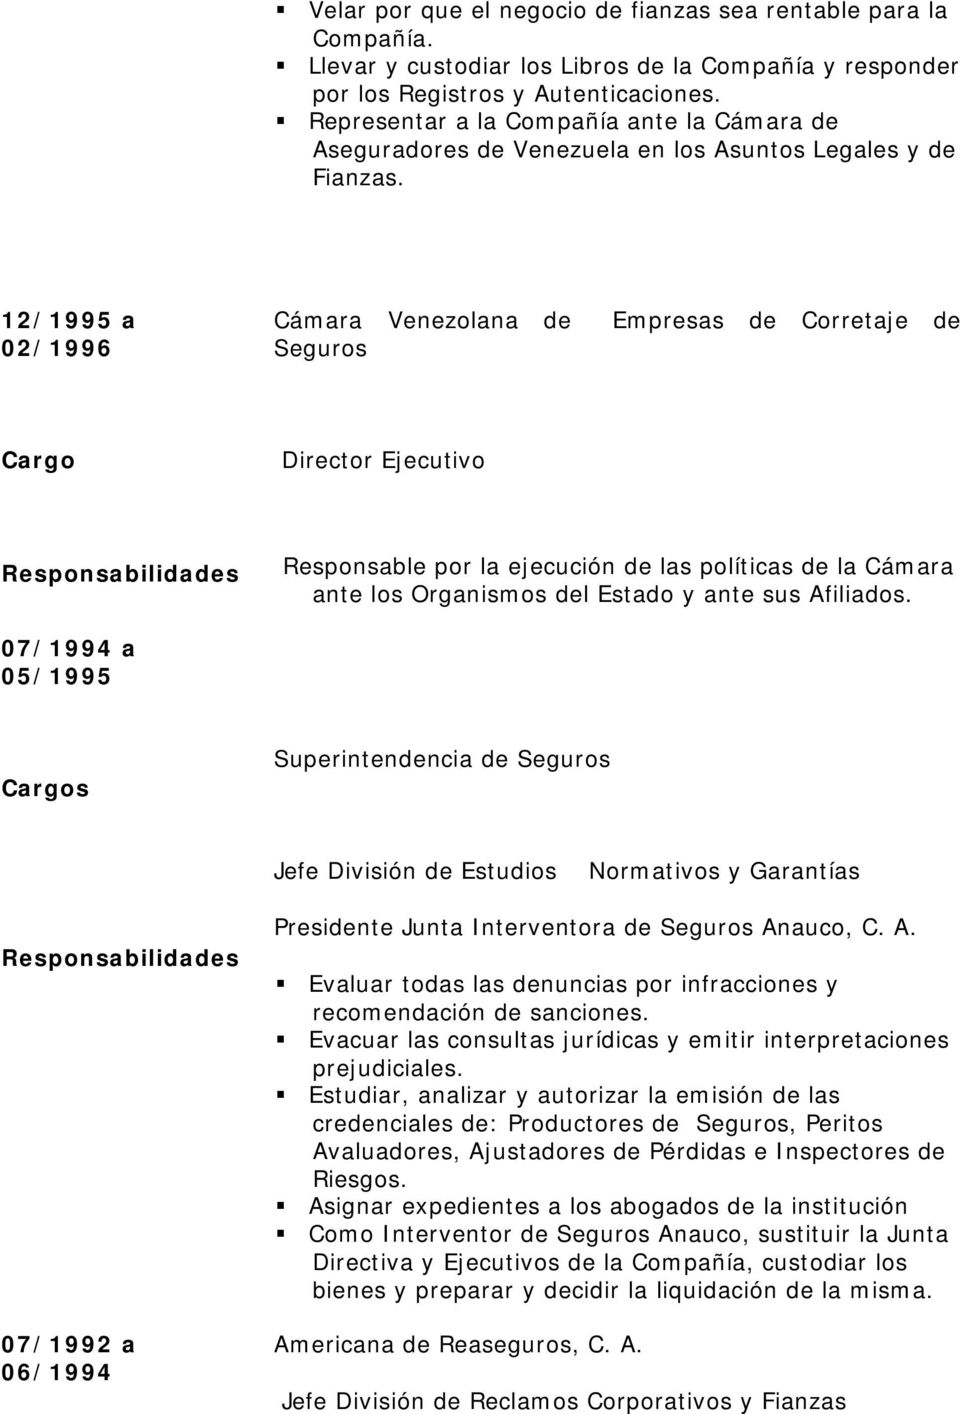 12/1995 a 02/1996 Cámara Venezolana de Empresas de Corretaje de Seguros Director Ejecutivo Responsable por la ejecución de las políticas de la Cámara ante los Organismos del Estado y ante sus